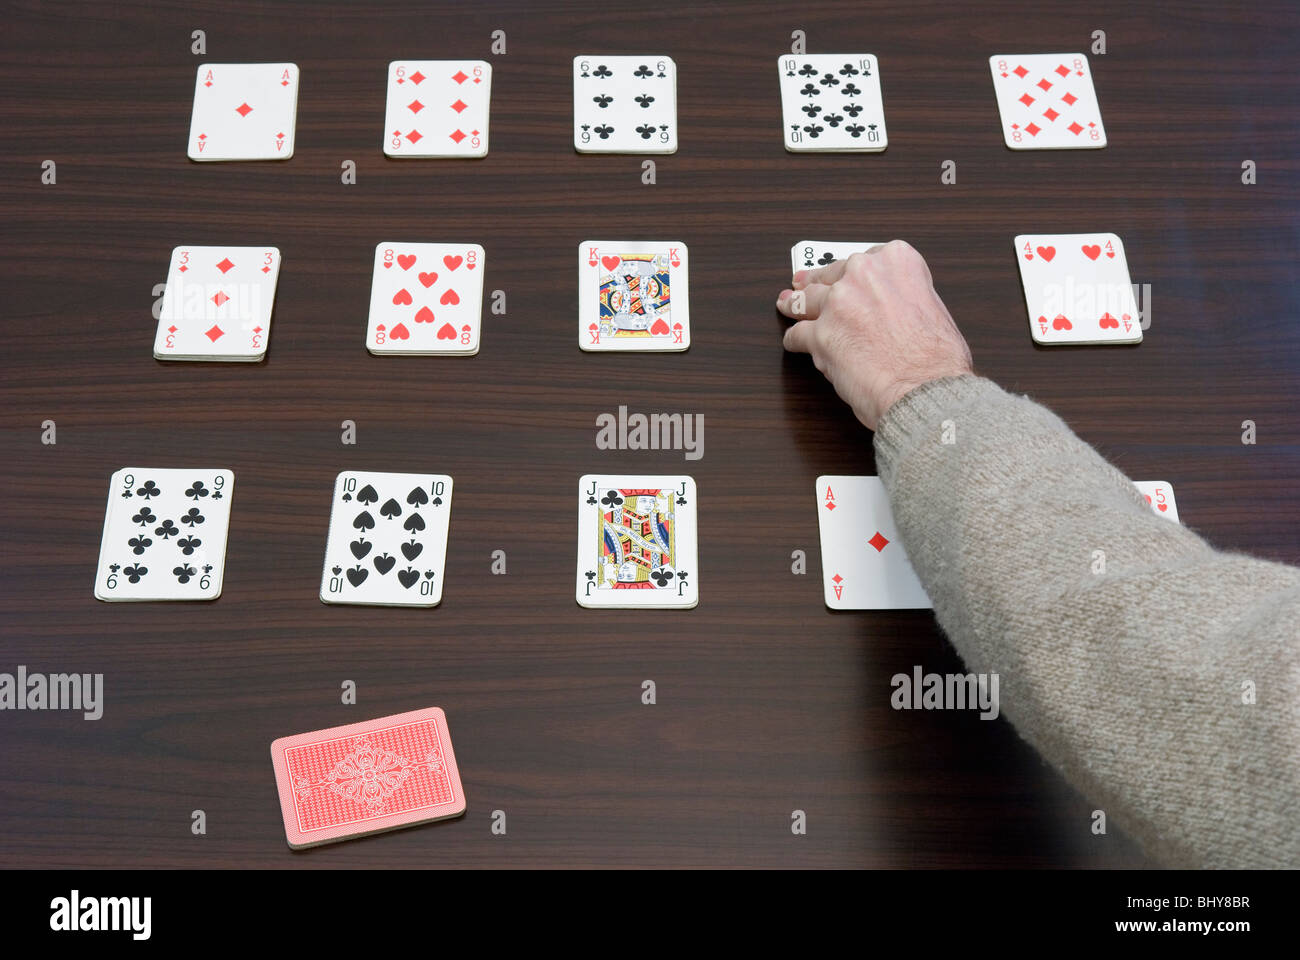 Juegos cartas Fotografía de - Alamy